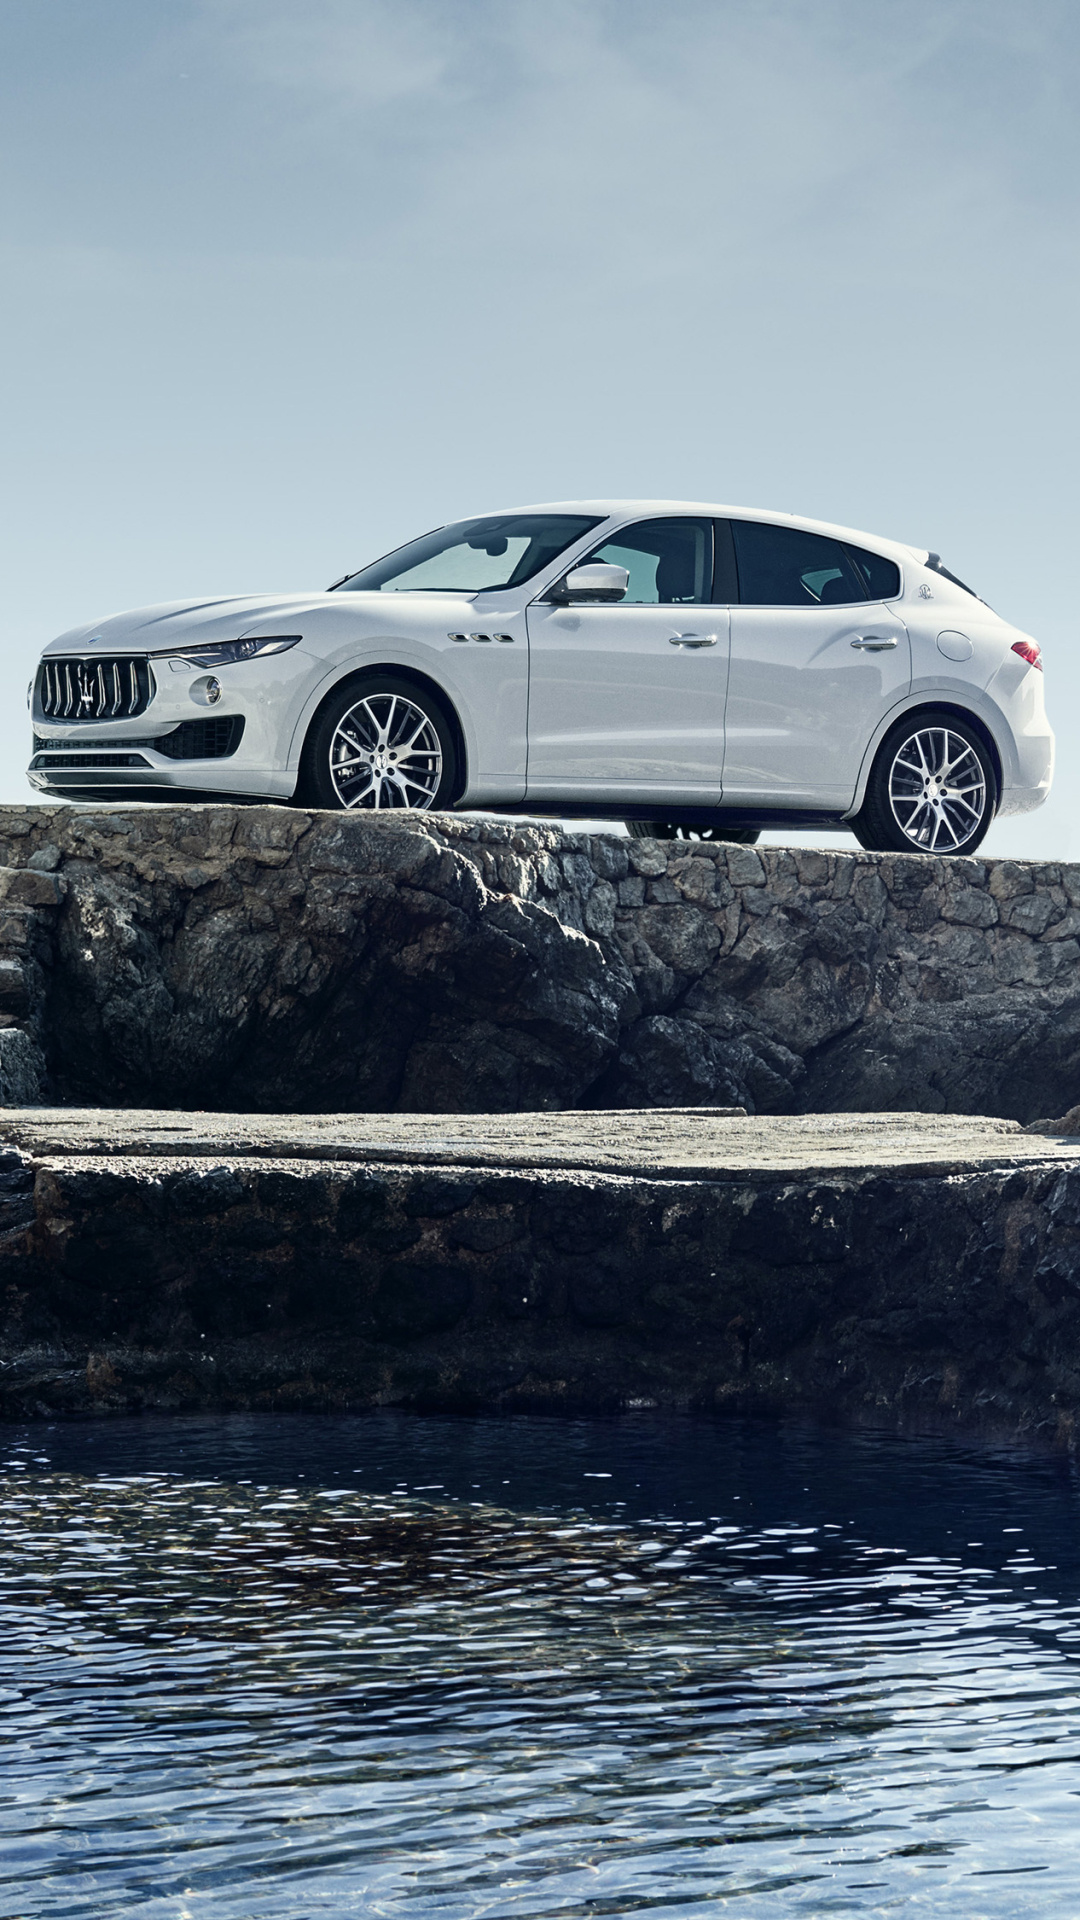 Maserati Levante, Luxury vehicles, Sophisticated design, Premium materials, 1080x1920 Full HD Phone